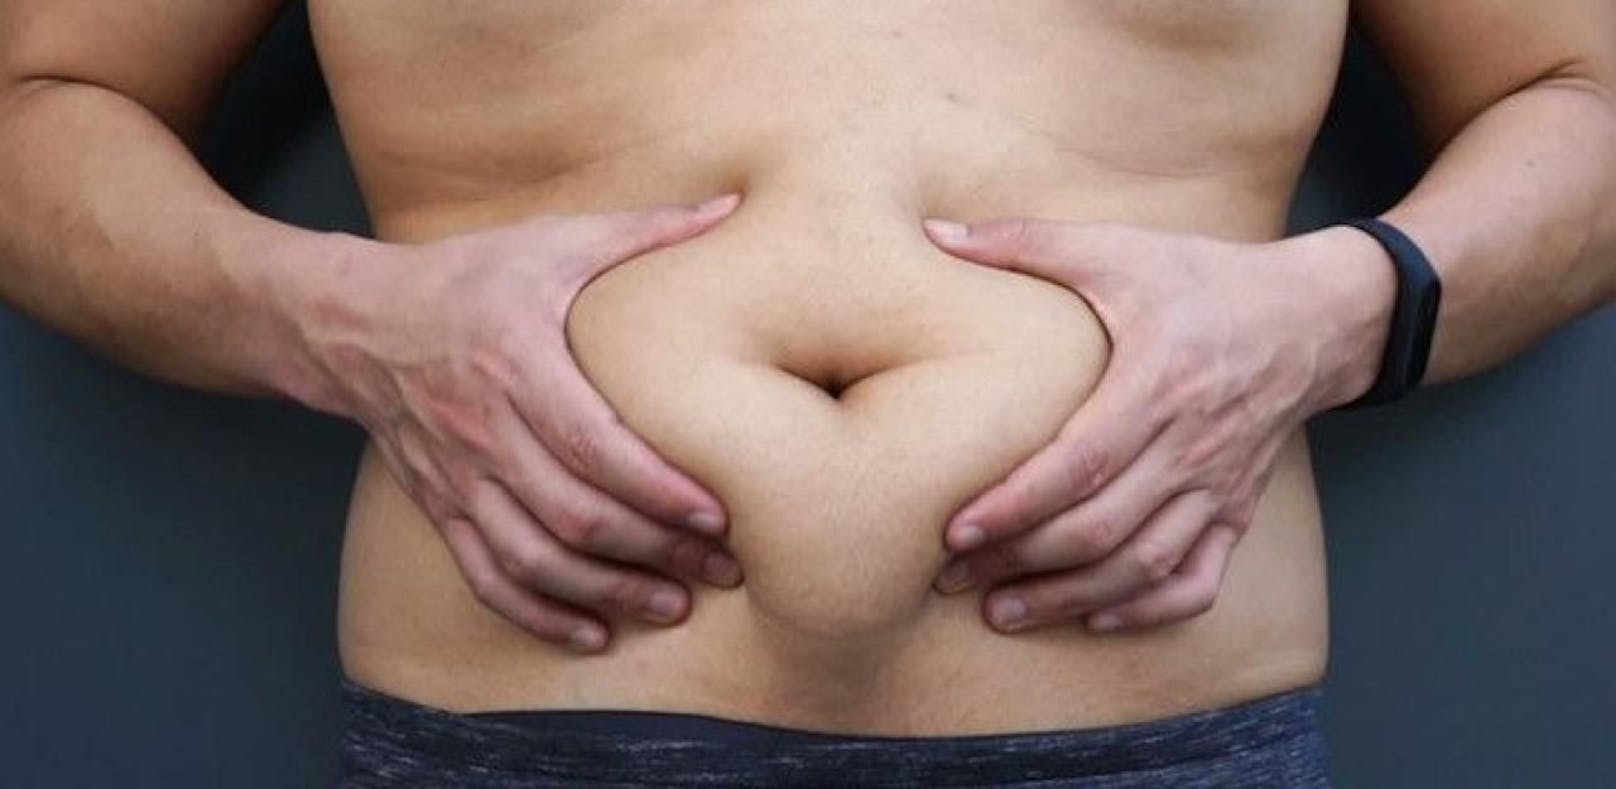 Im Bauchraum gespeichertes Fett gilt im Vergleich zu subkutanem [unter der Haut liegendem] Fett als eher krankheitsverursachend.